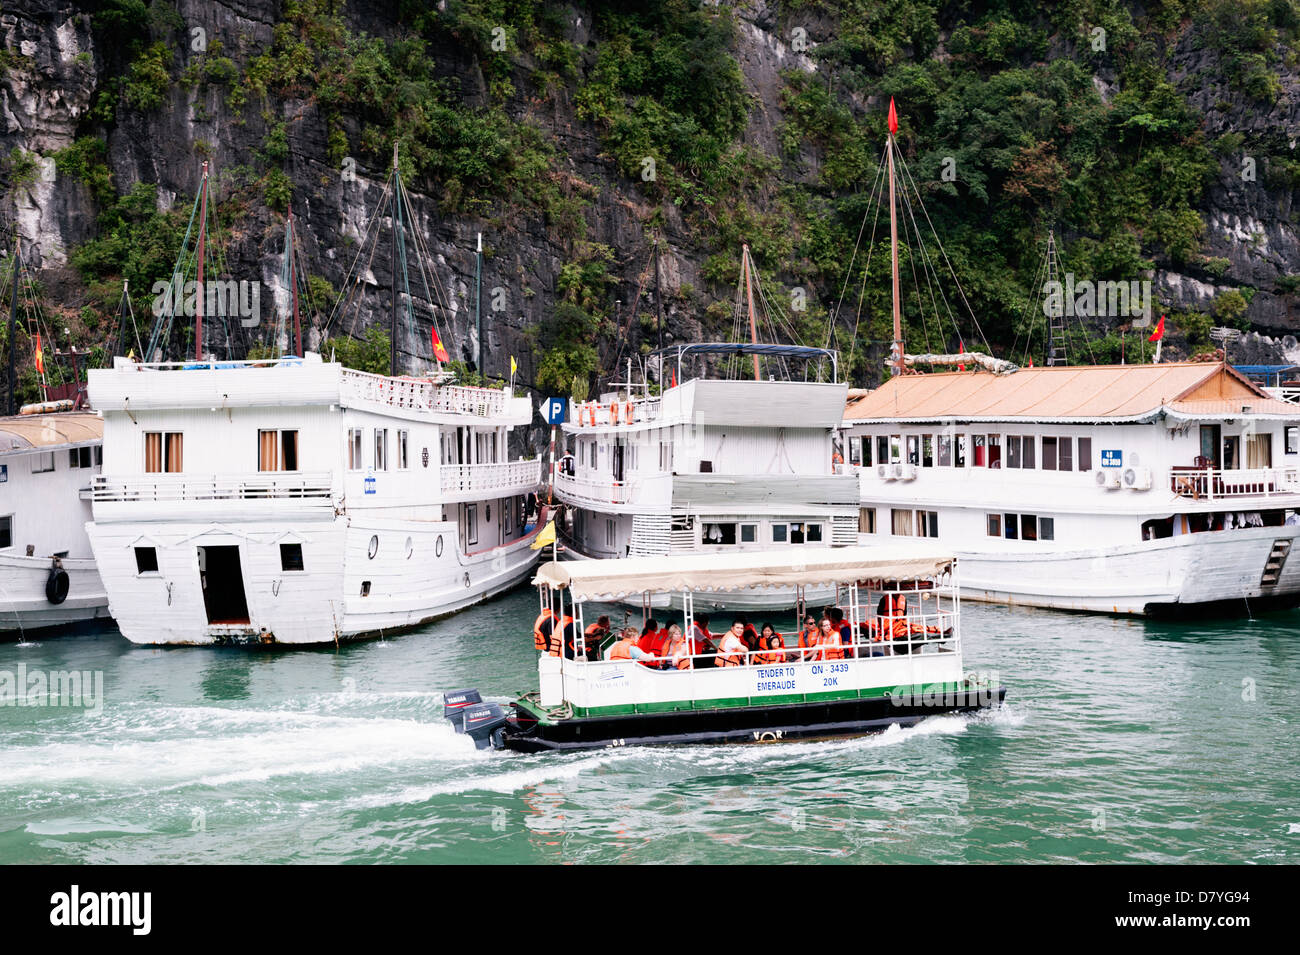 La baie d'Ha Long, Vietnam - bateaux de croisière touristique et tendre Banque D'Images